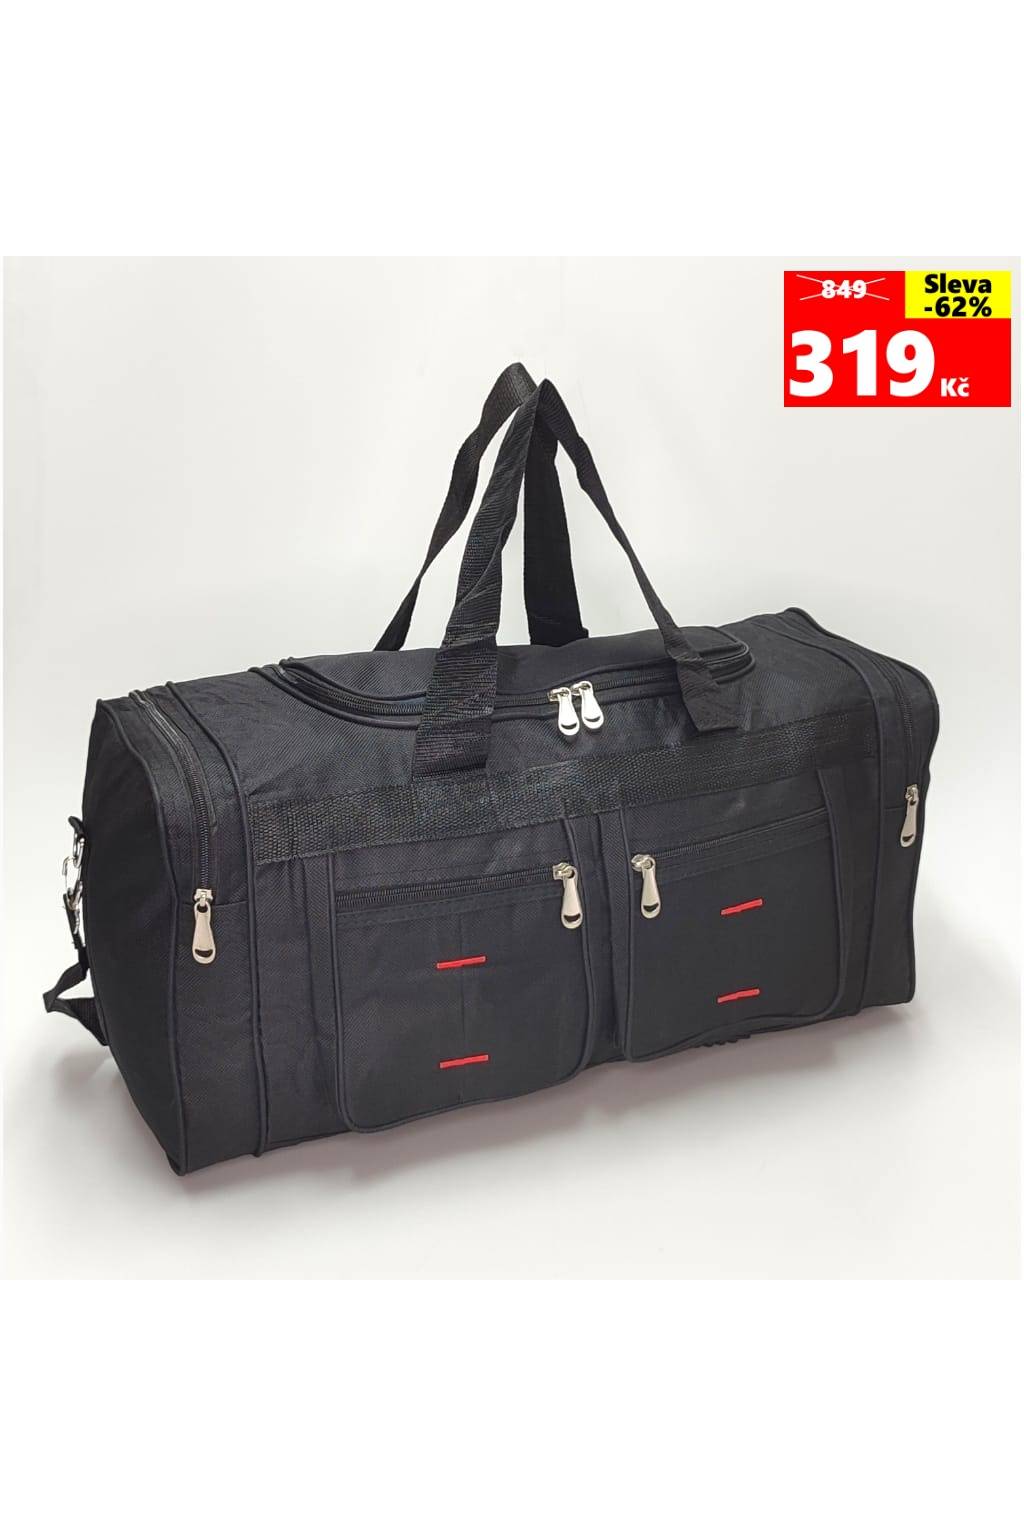 Cestovná taška 016 55 čierna www.kabelky vypredaj.eu (6)